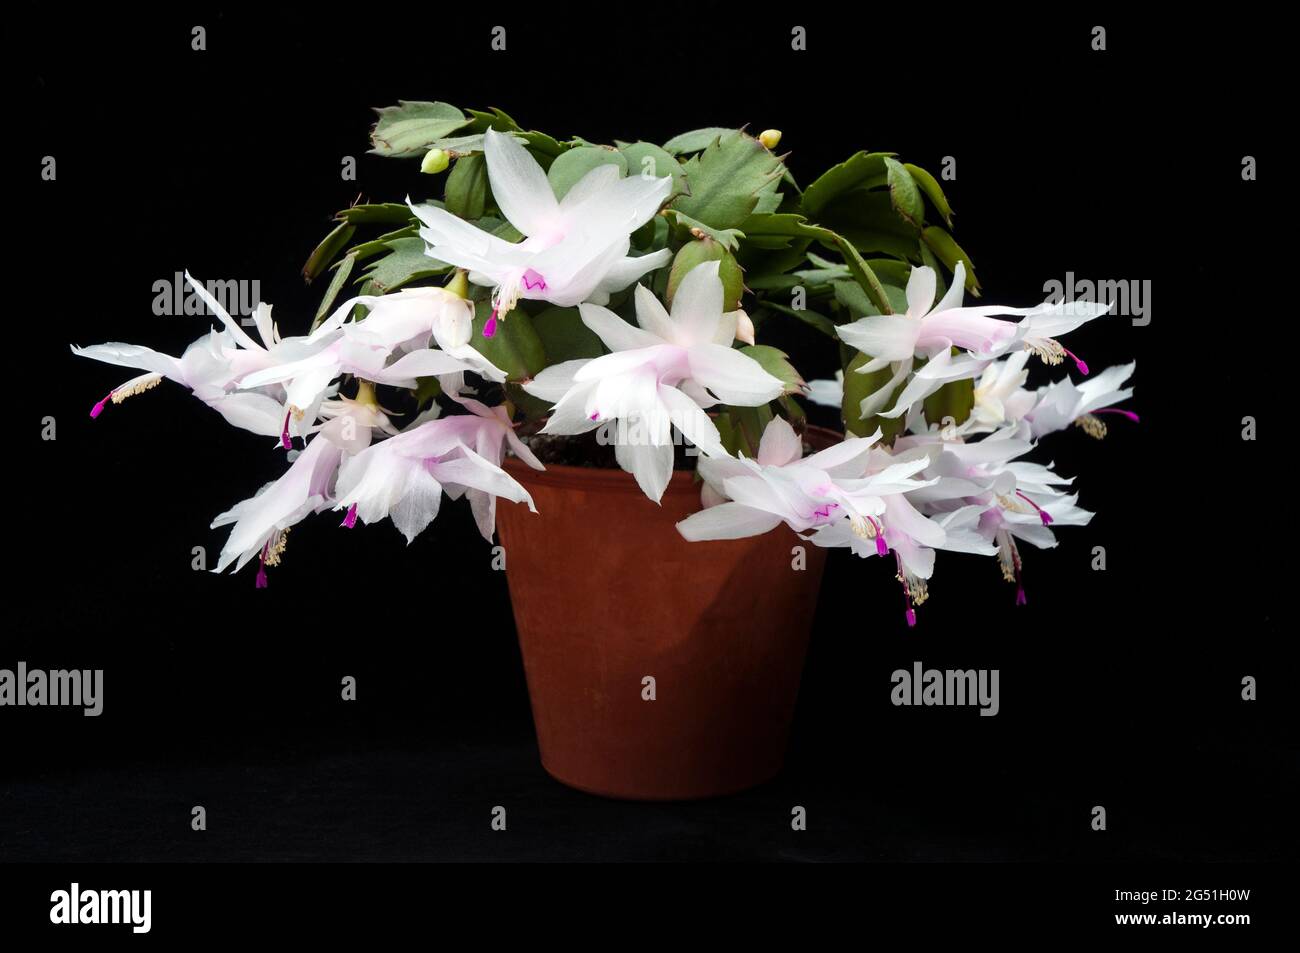 Primo piano della fioritura invernale di Schlumbergera truncata o di Crab cactus con fiori bianchi, il membro della famiglia delle cactaceae cresce all'interno come gelo tenero Foto Stock